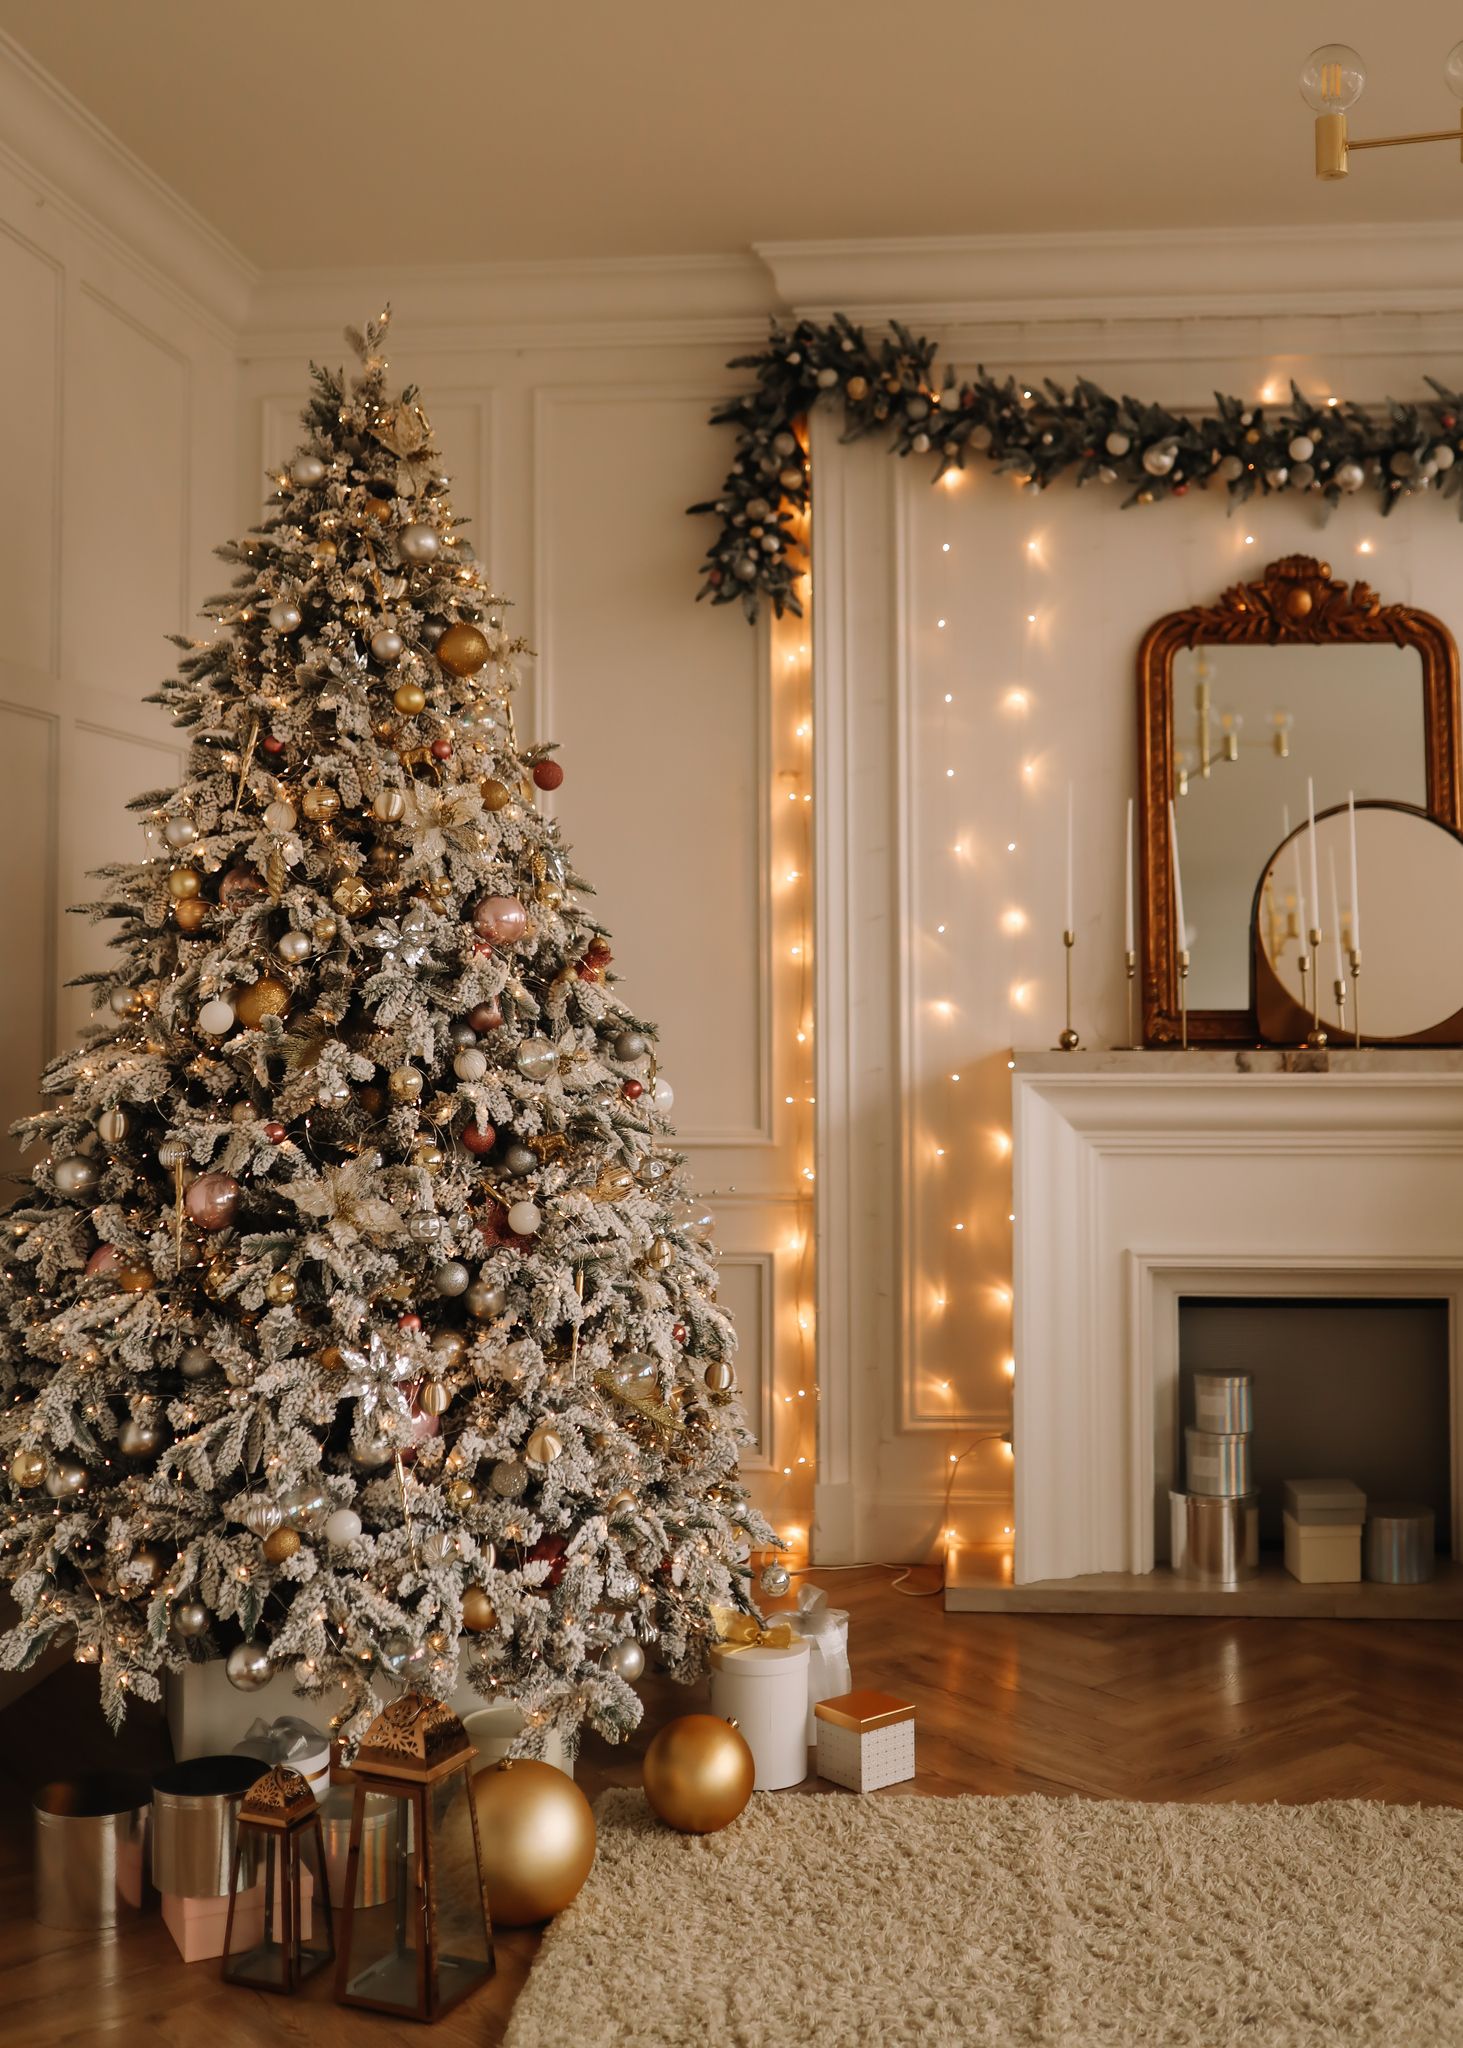 Hermoso interior de navidad con chimenea decorativa y abeto